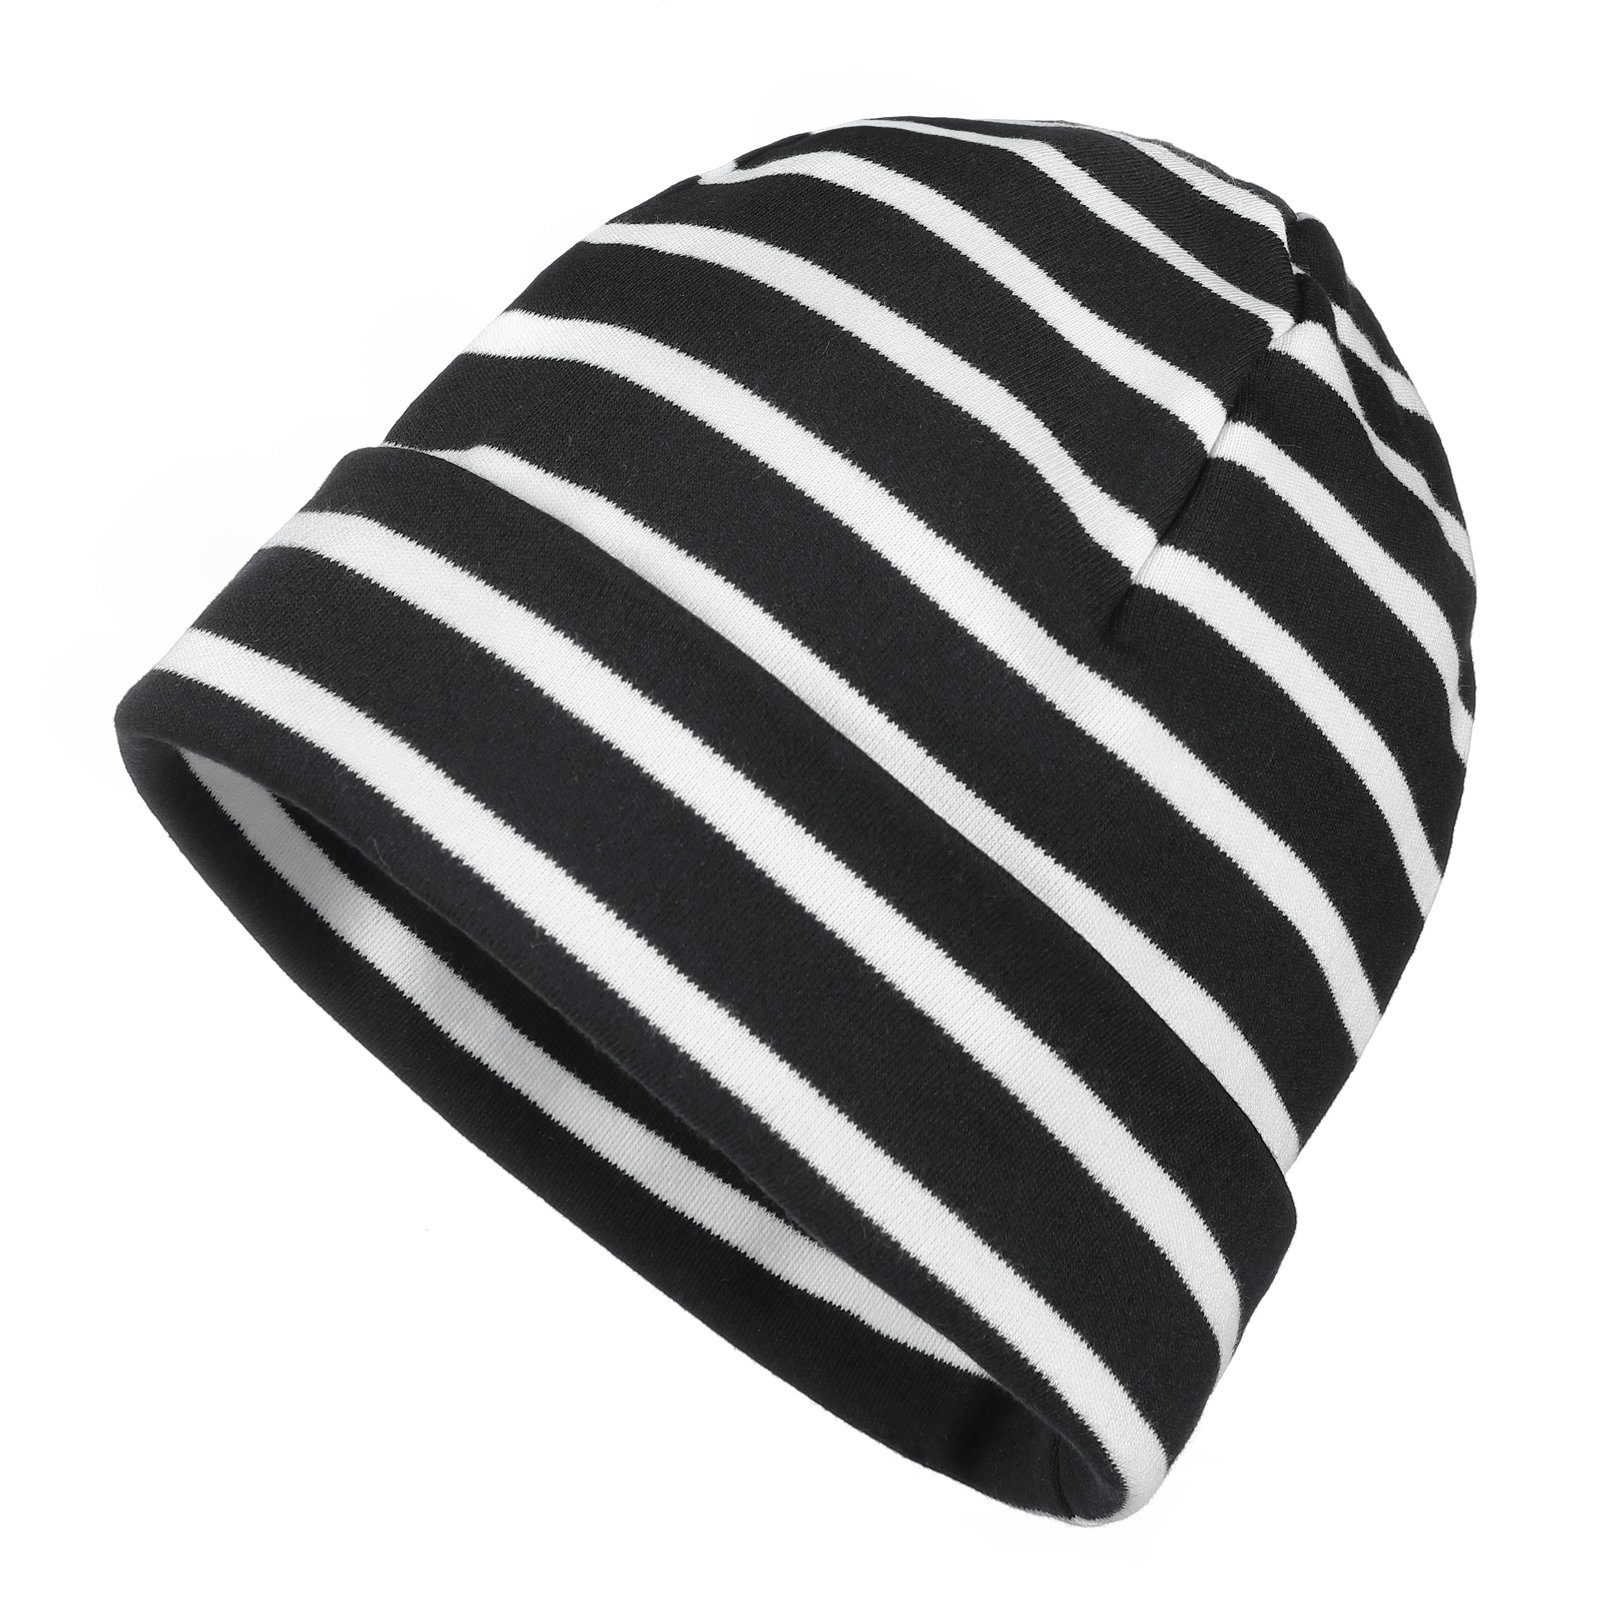 modAS Strickmütze Unisex Mütze Streifen für Kinder & Erwachsene - Ringelmütze Baumwolle (99) schwarz / weiß